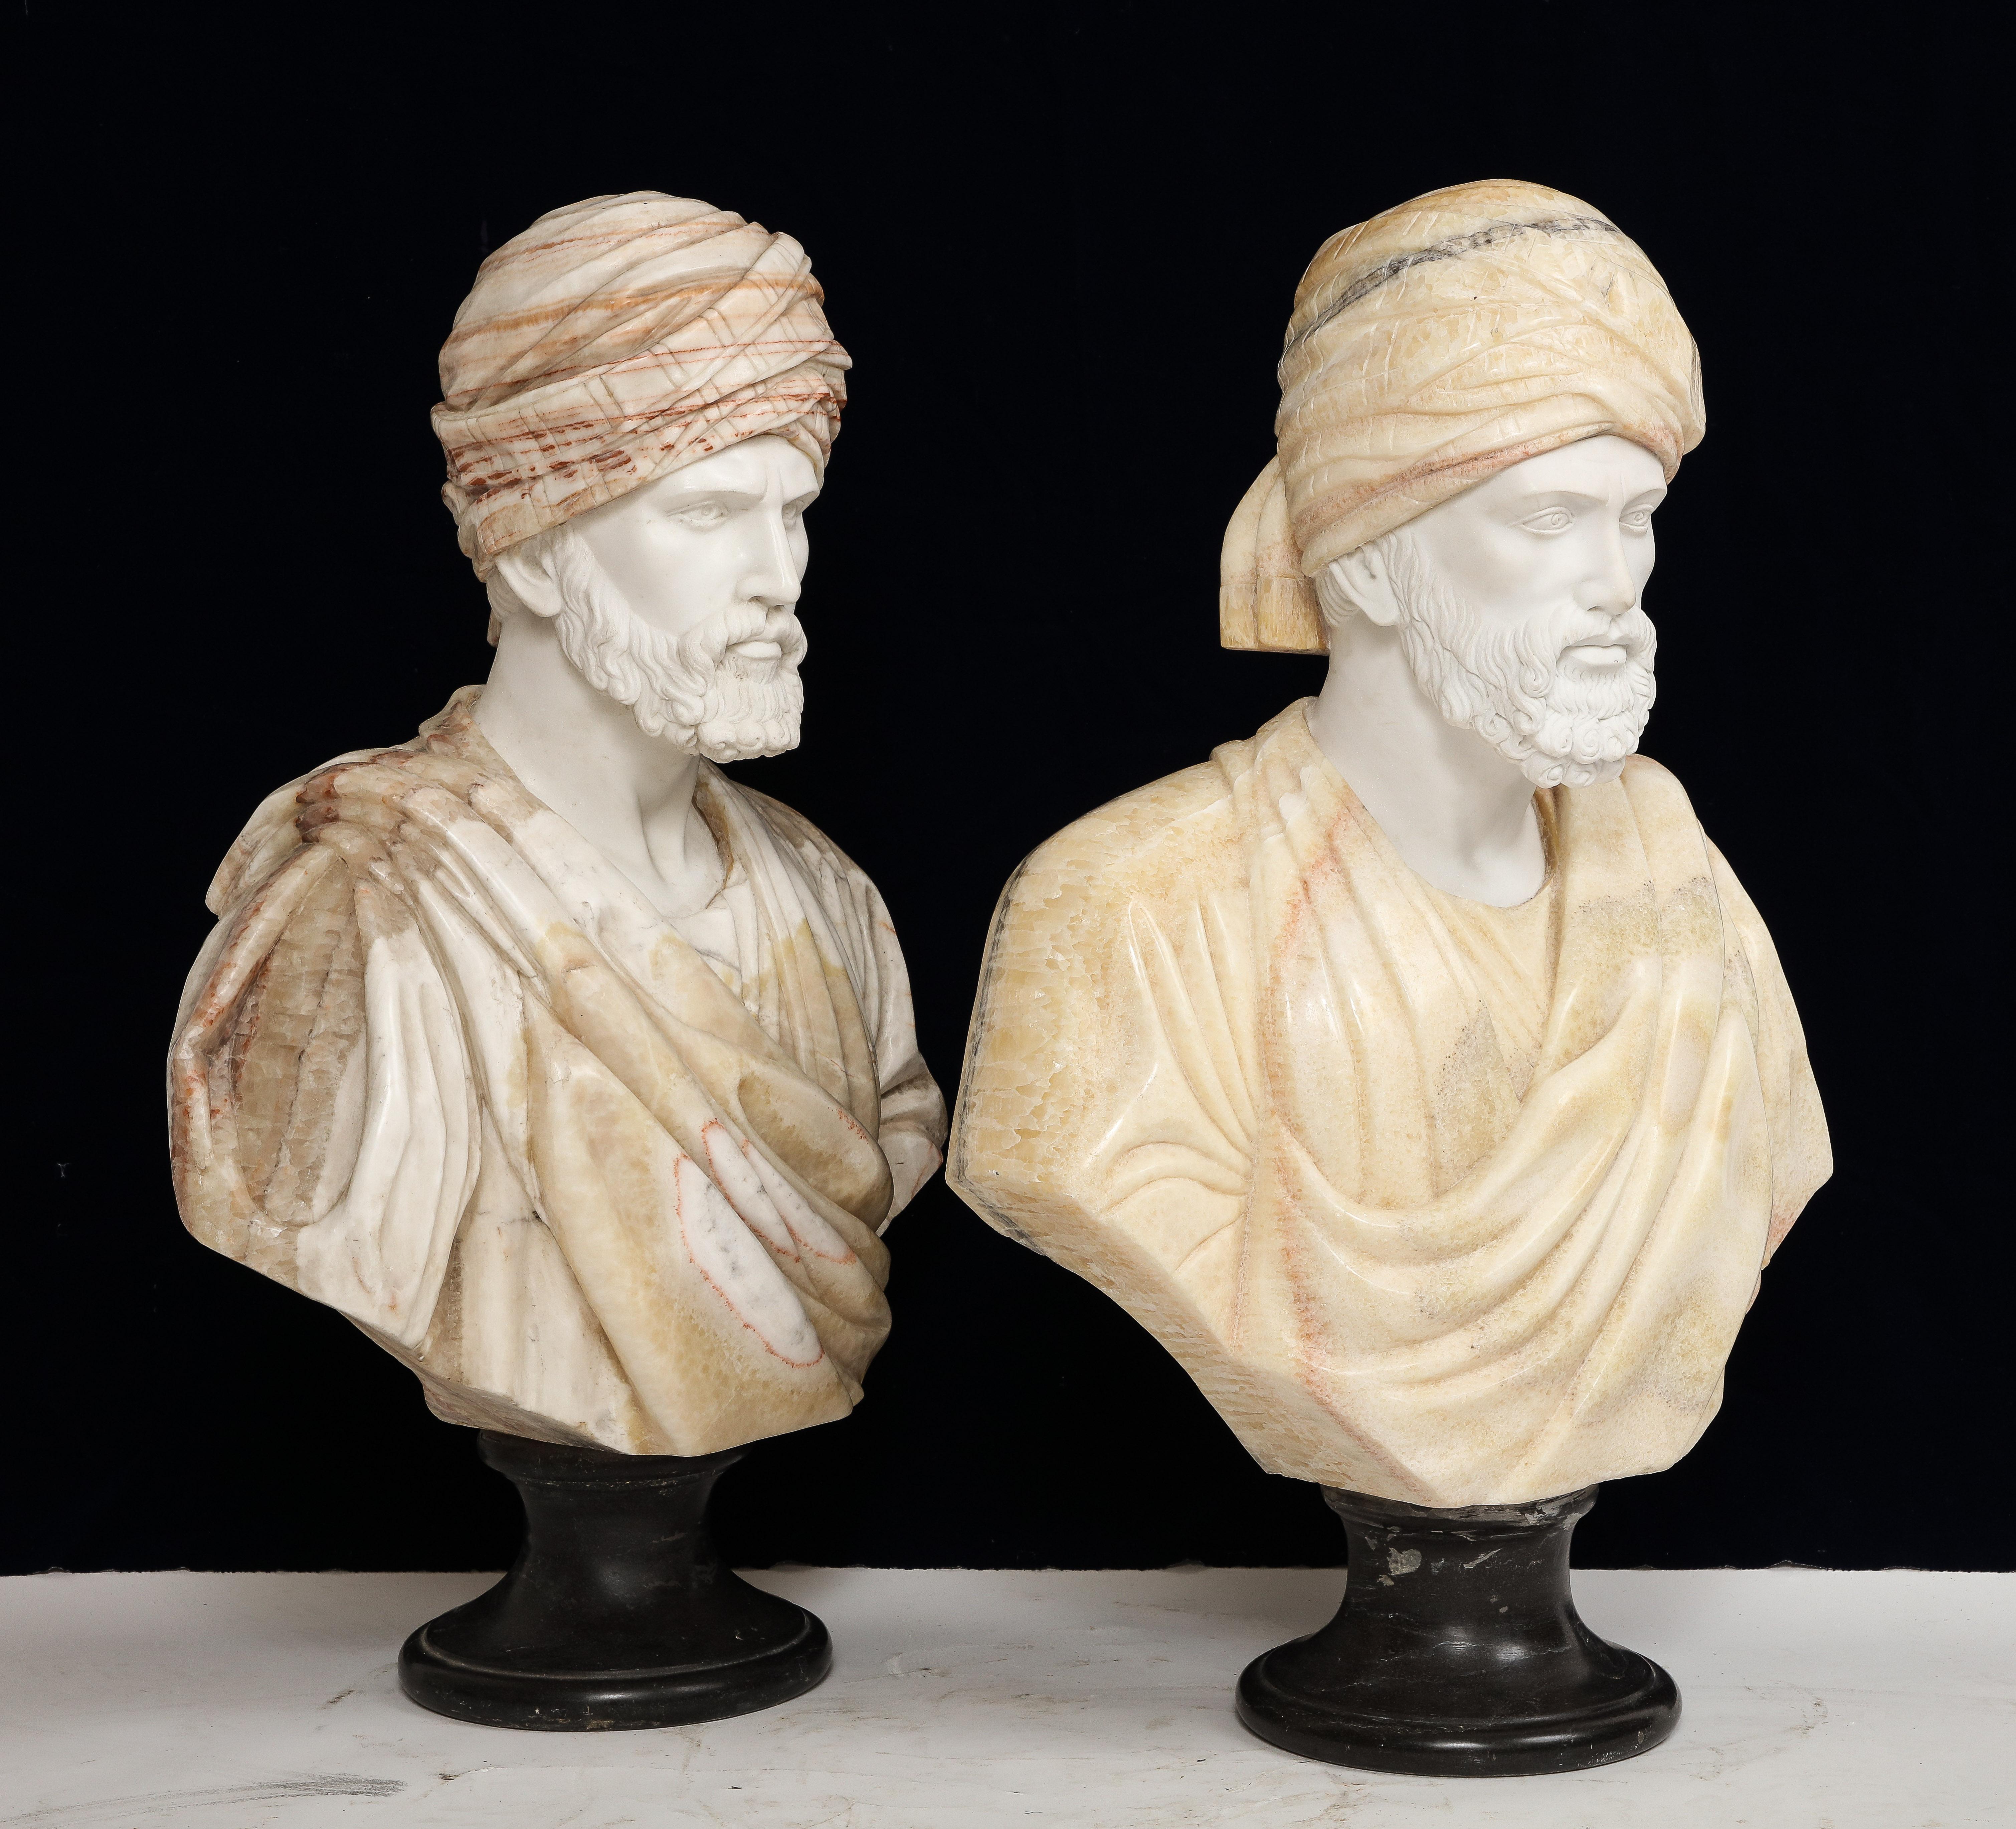 Ein ungewöhnliches Paar italienischer, handgeschnitzter Marmor- und Onyxbüsten von orientalischen Königen, 1900er Jahre

Dieses außergewöhnliche Paar italienischer Marmorbüsten ist ein Zeugnis für die zeitlose Anziehungskraft klassischer Kunst und